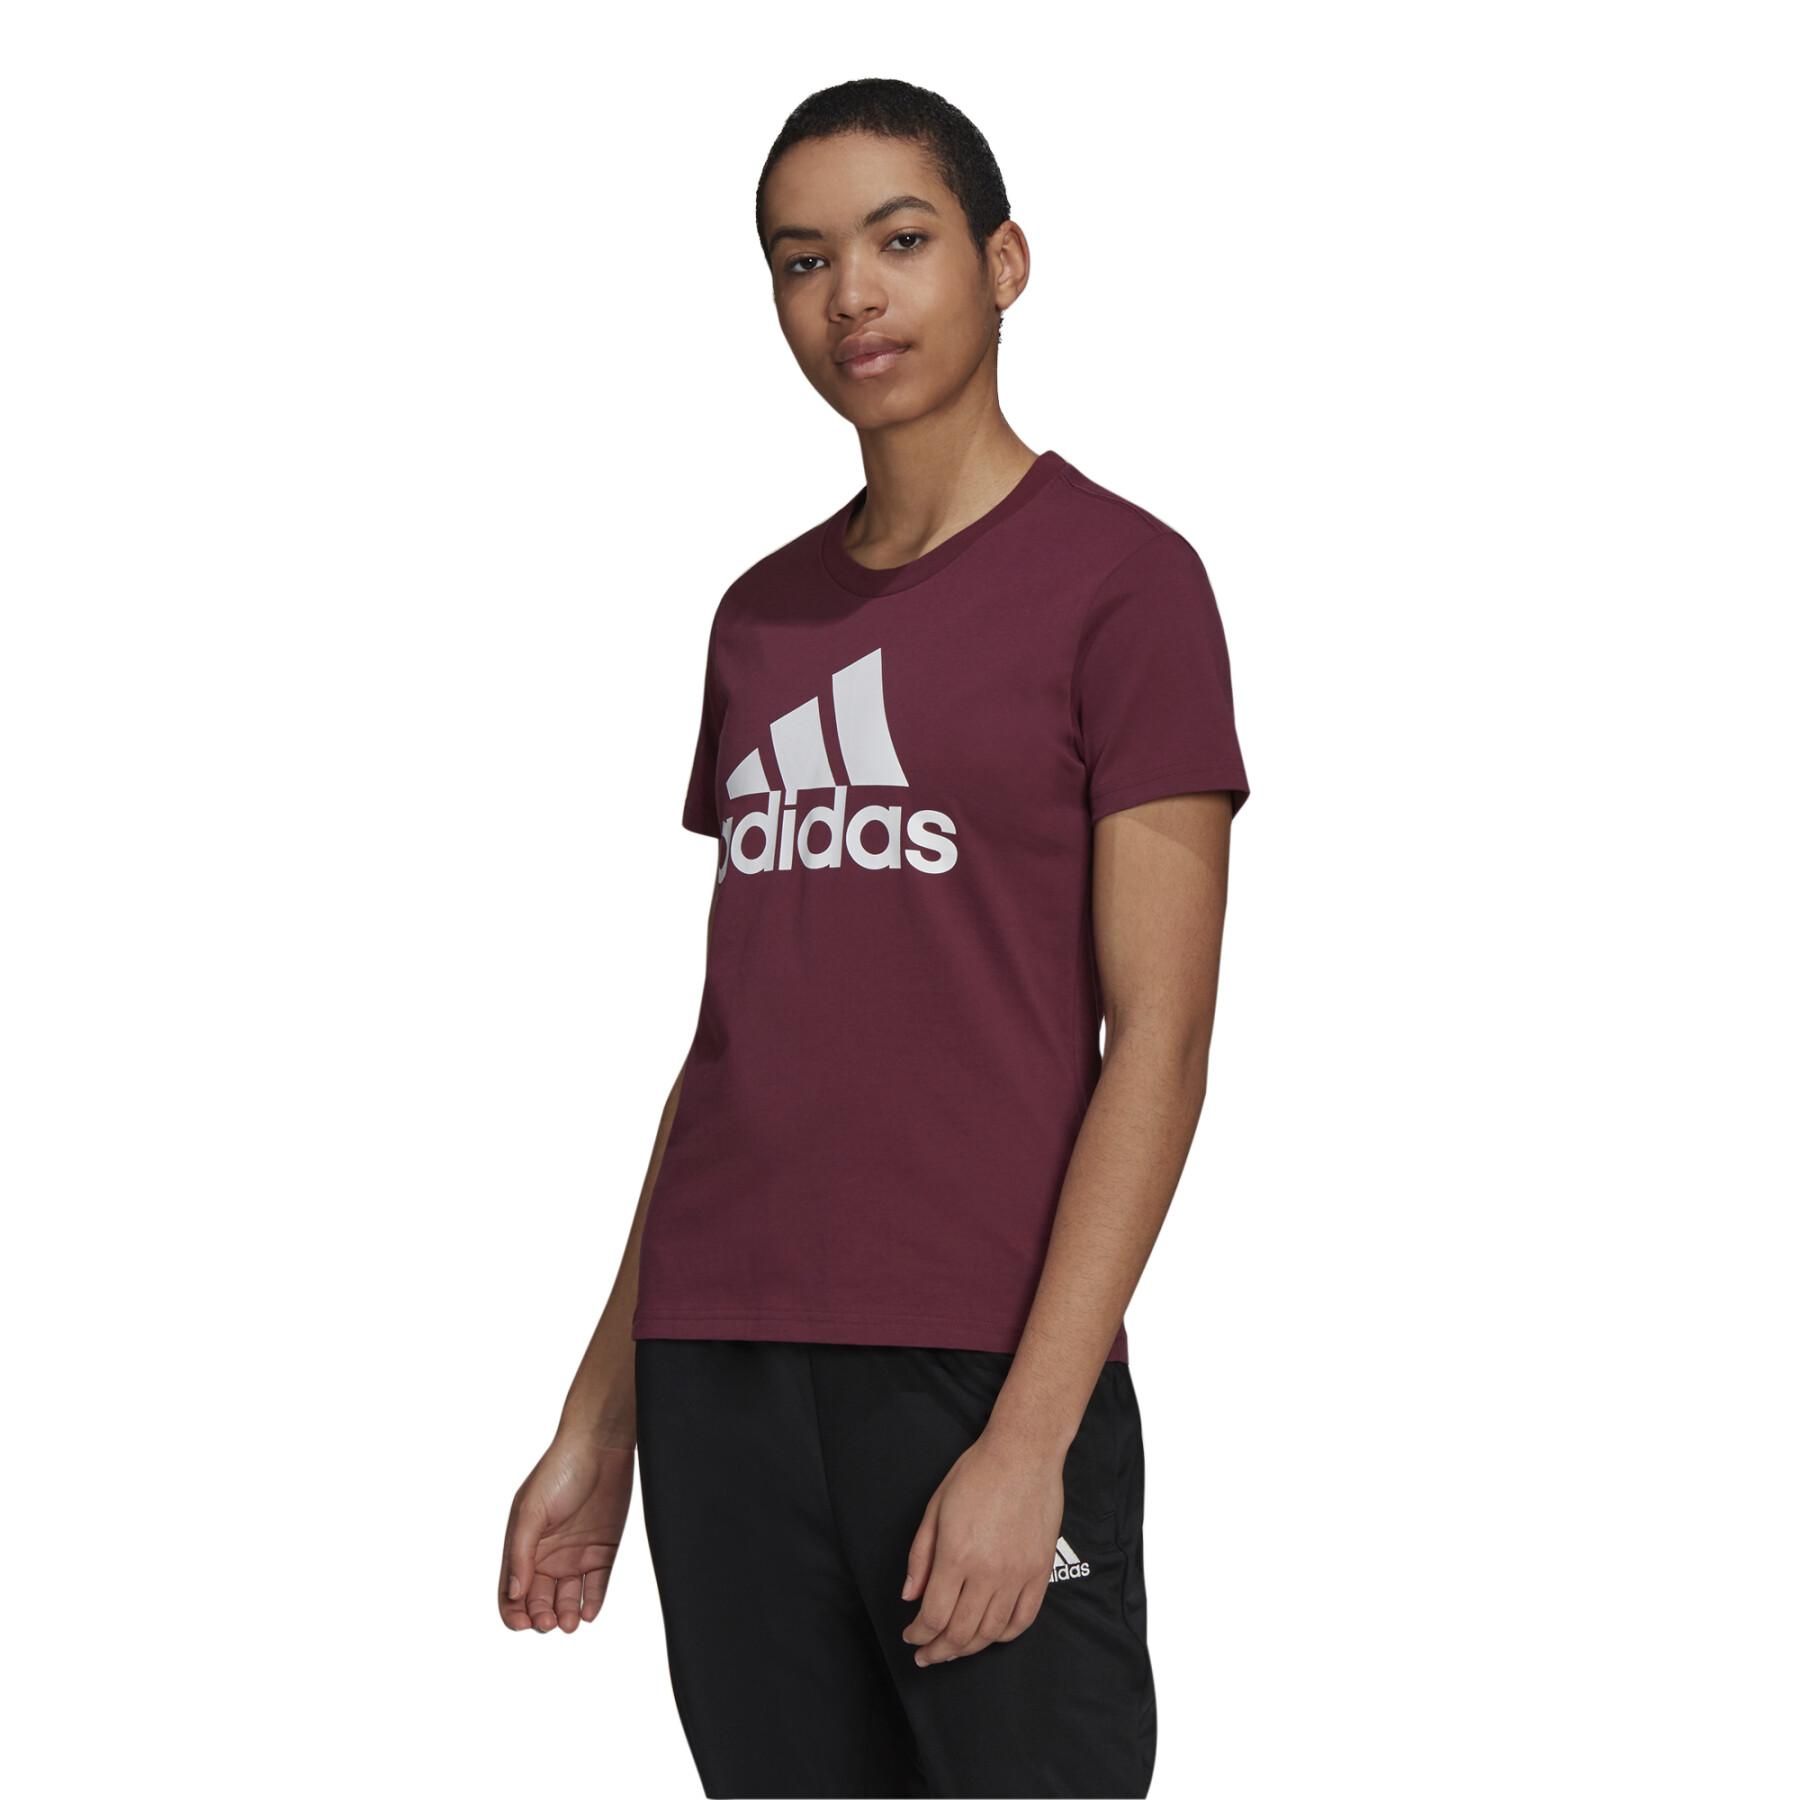 Damen-T-Shirt adidas Loungewear Essentials Logo